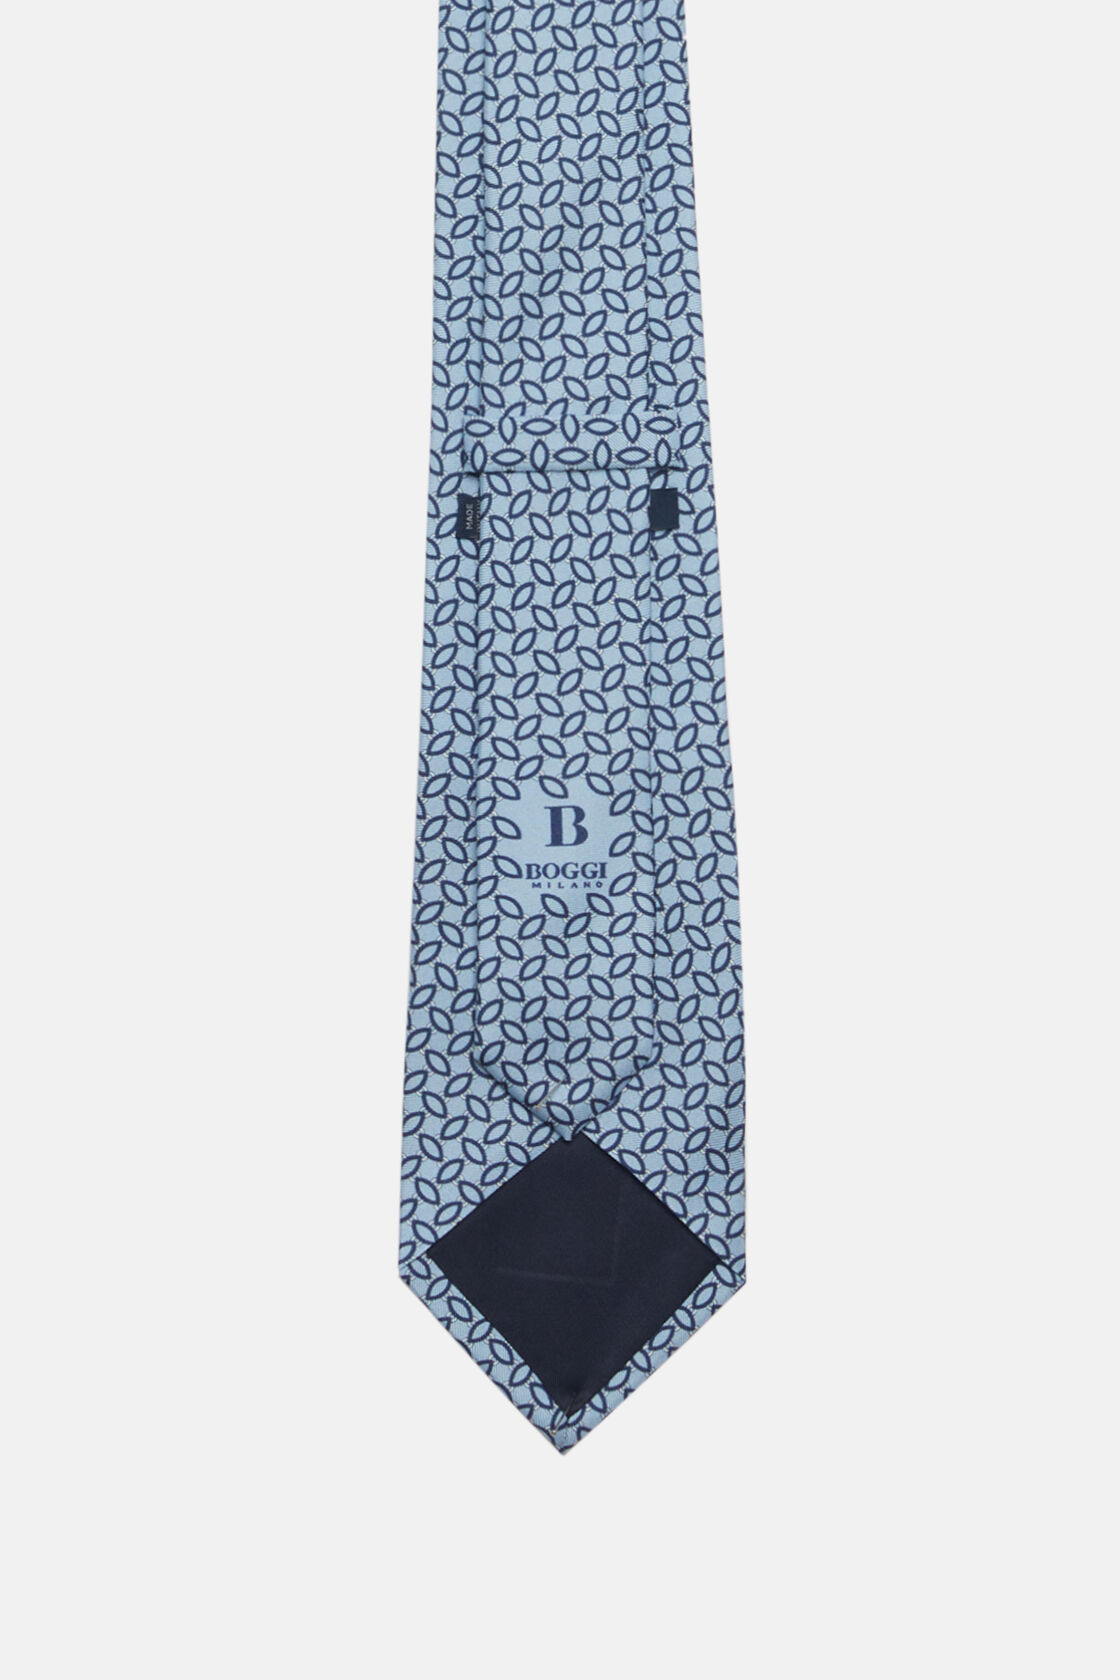 Μεταξωτή γραβάτα με μικρά σχέδια, Light Blue, hi-res